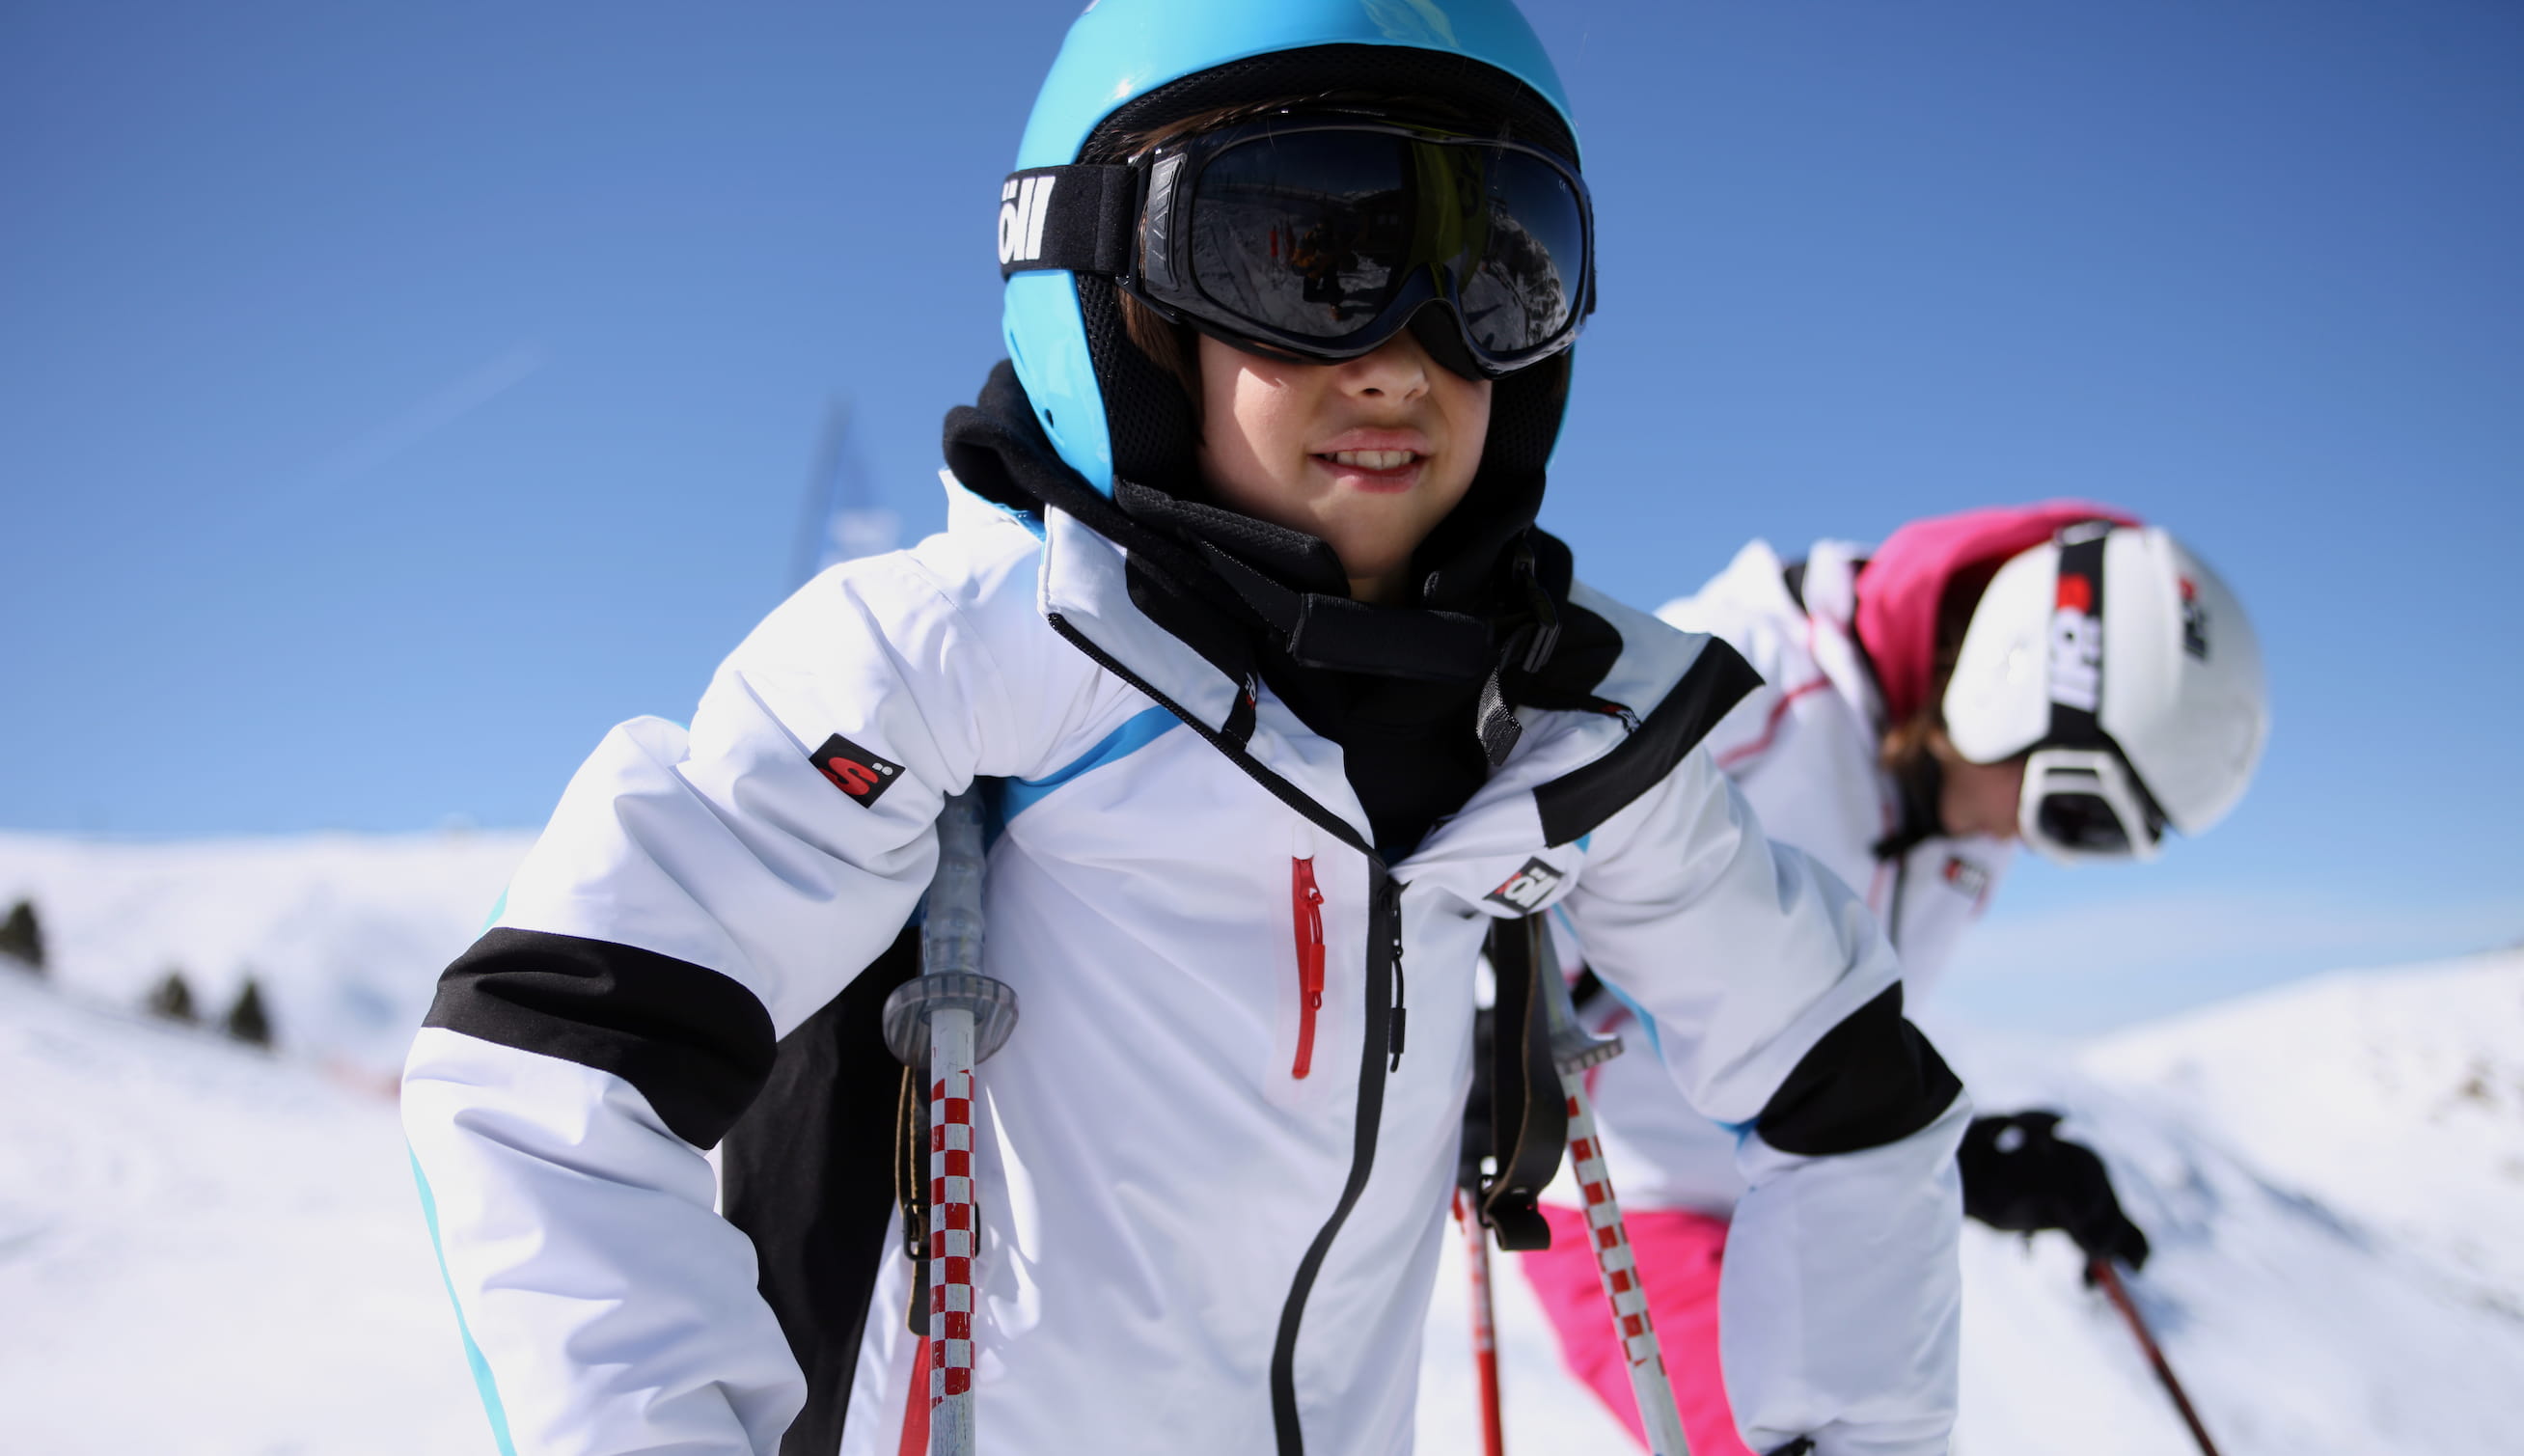 Ropa térmica mujer · Ropa para esquí y snow · Deportes · El Corte